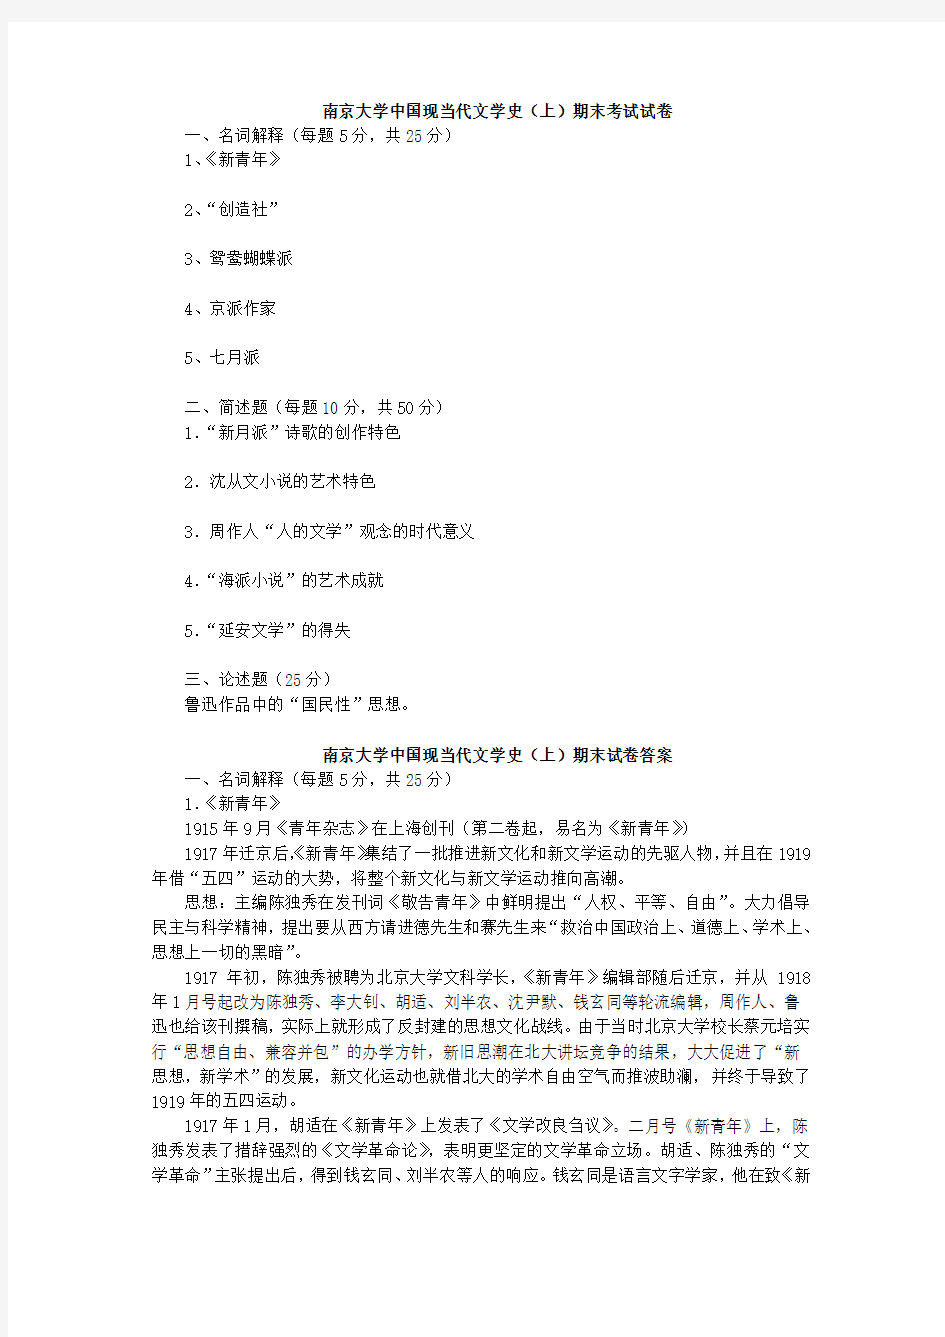 南京大学中国现当代文学史(上)期末考试试卷(附答案)